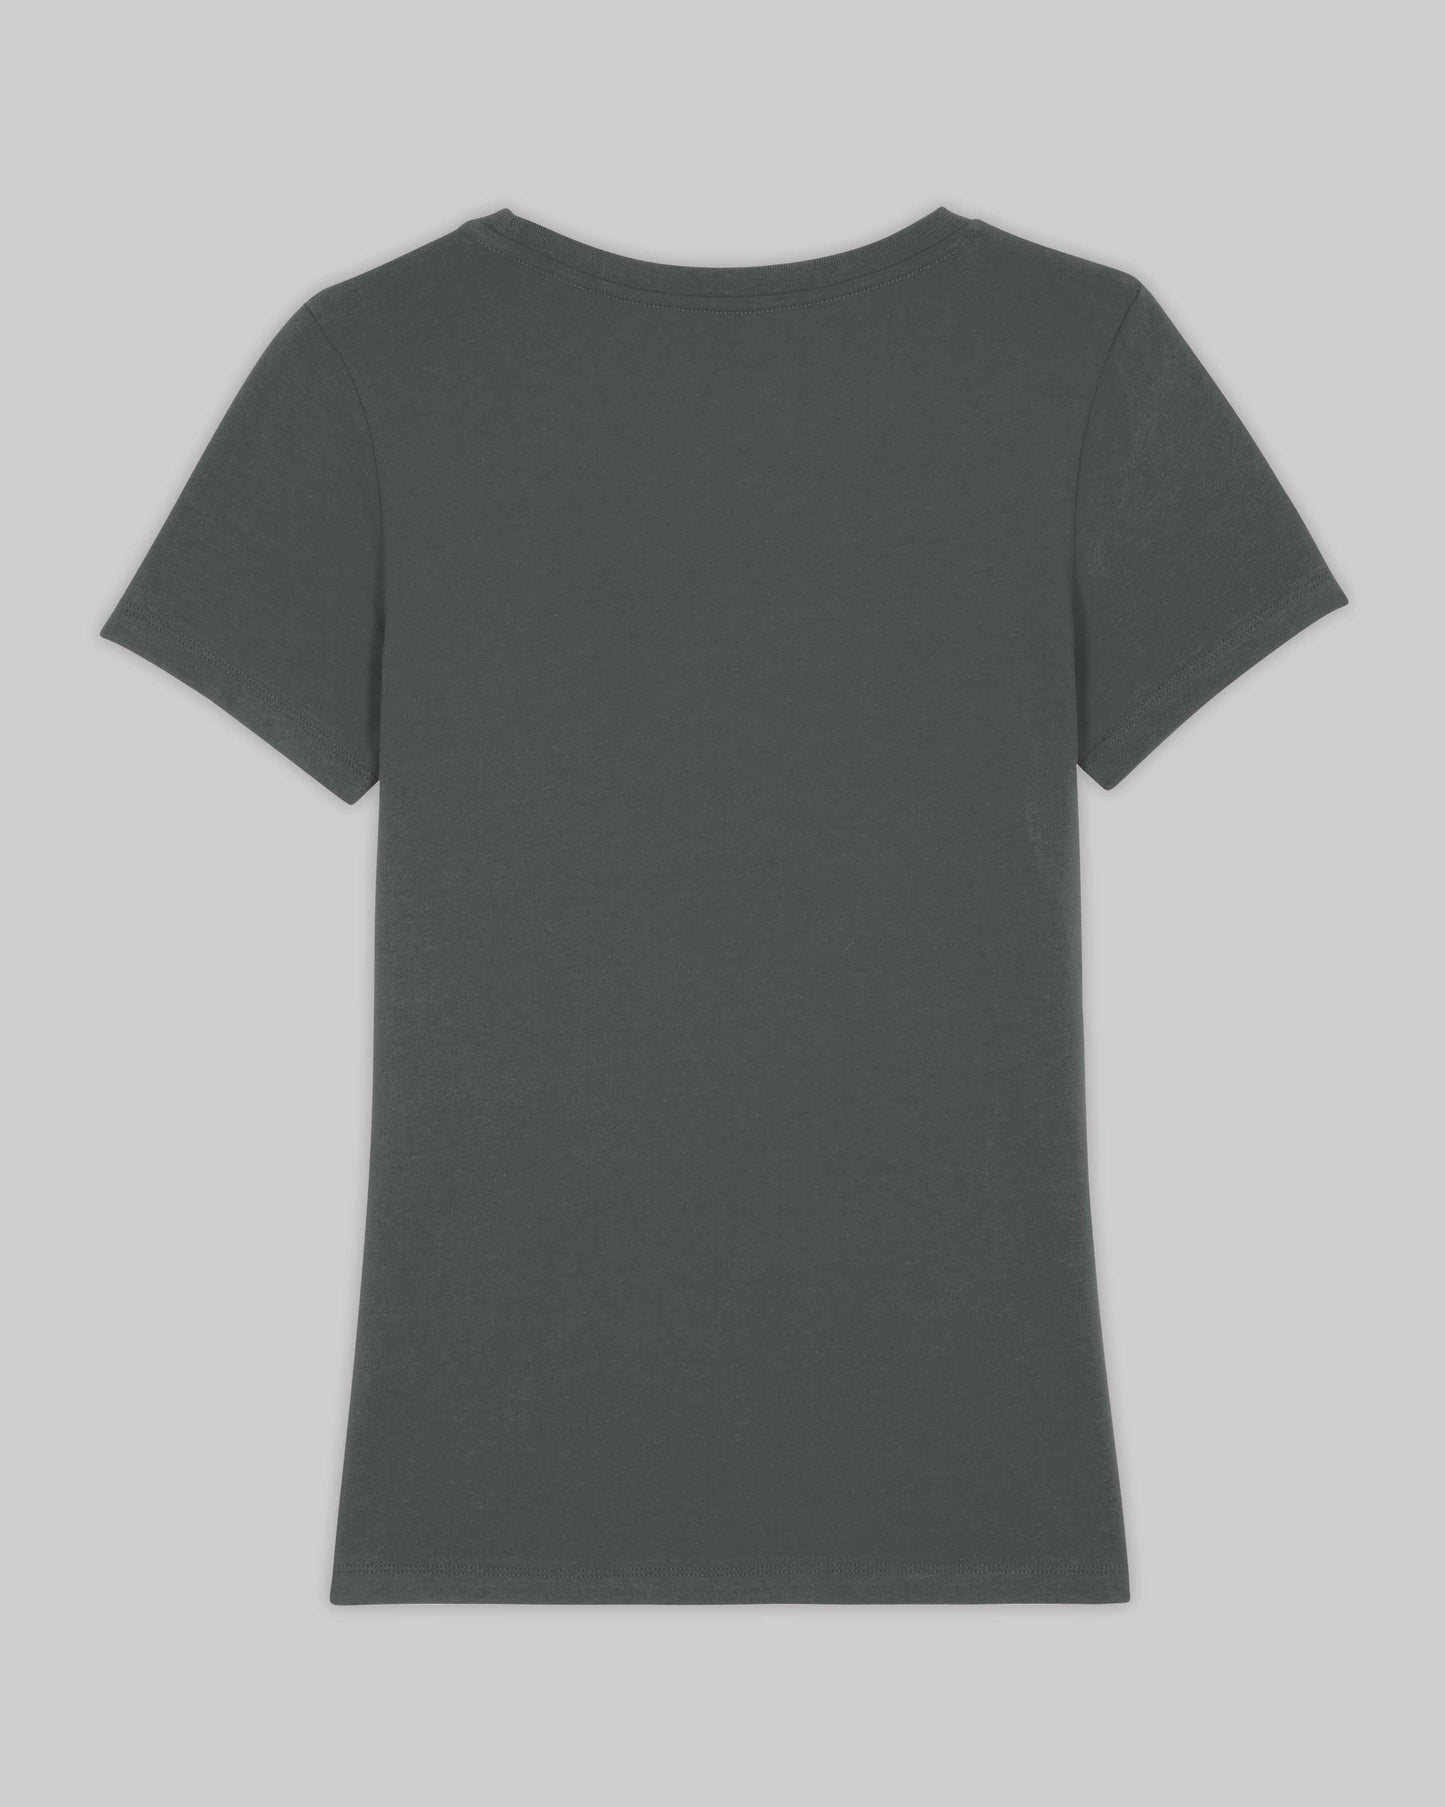 EINHORST® Organic Shirt tailliert in "Anthracite" mit dem Motiv "equal Regenbogen" in der Kombination schwarzer Regenbogen mit schwarzer Schrift, Bild von Shirt von hinten